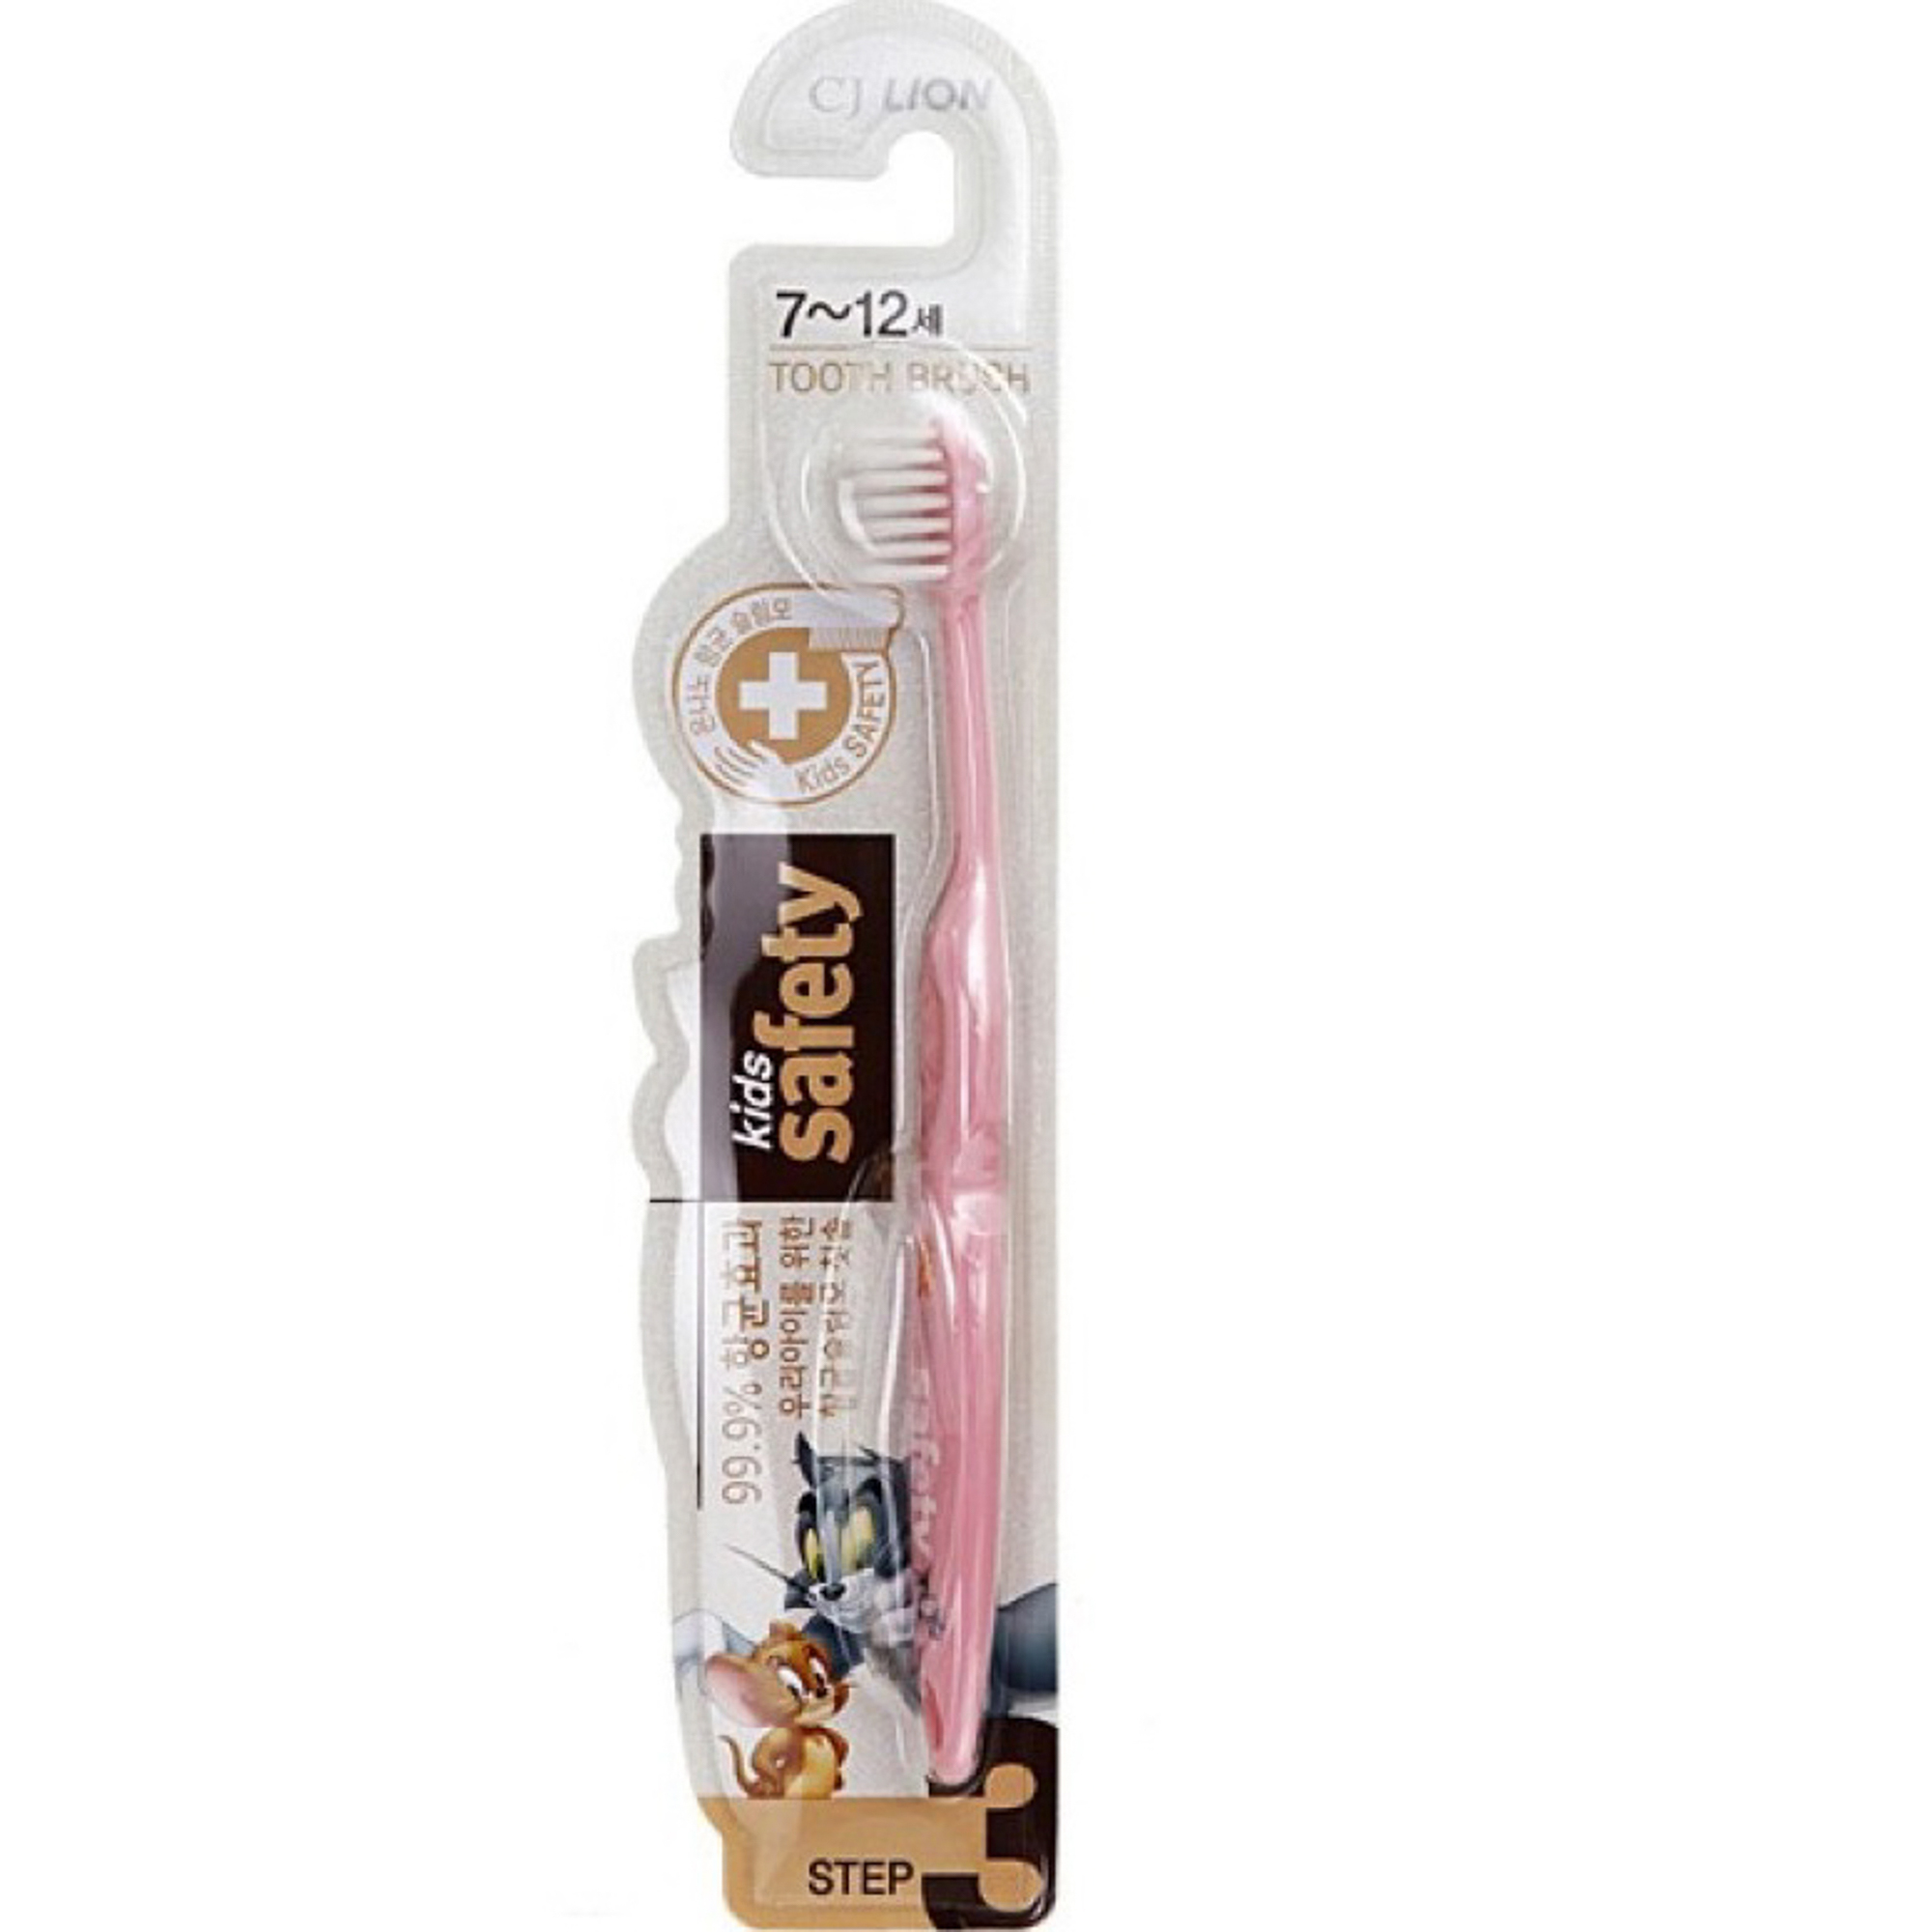 Зубная щетка детская CJ Lion Kids Safe с нано-серебряным покрытием от 7лет детская зубная щетка в бамбуковом чехле